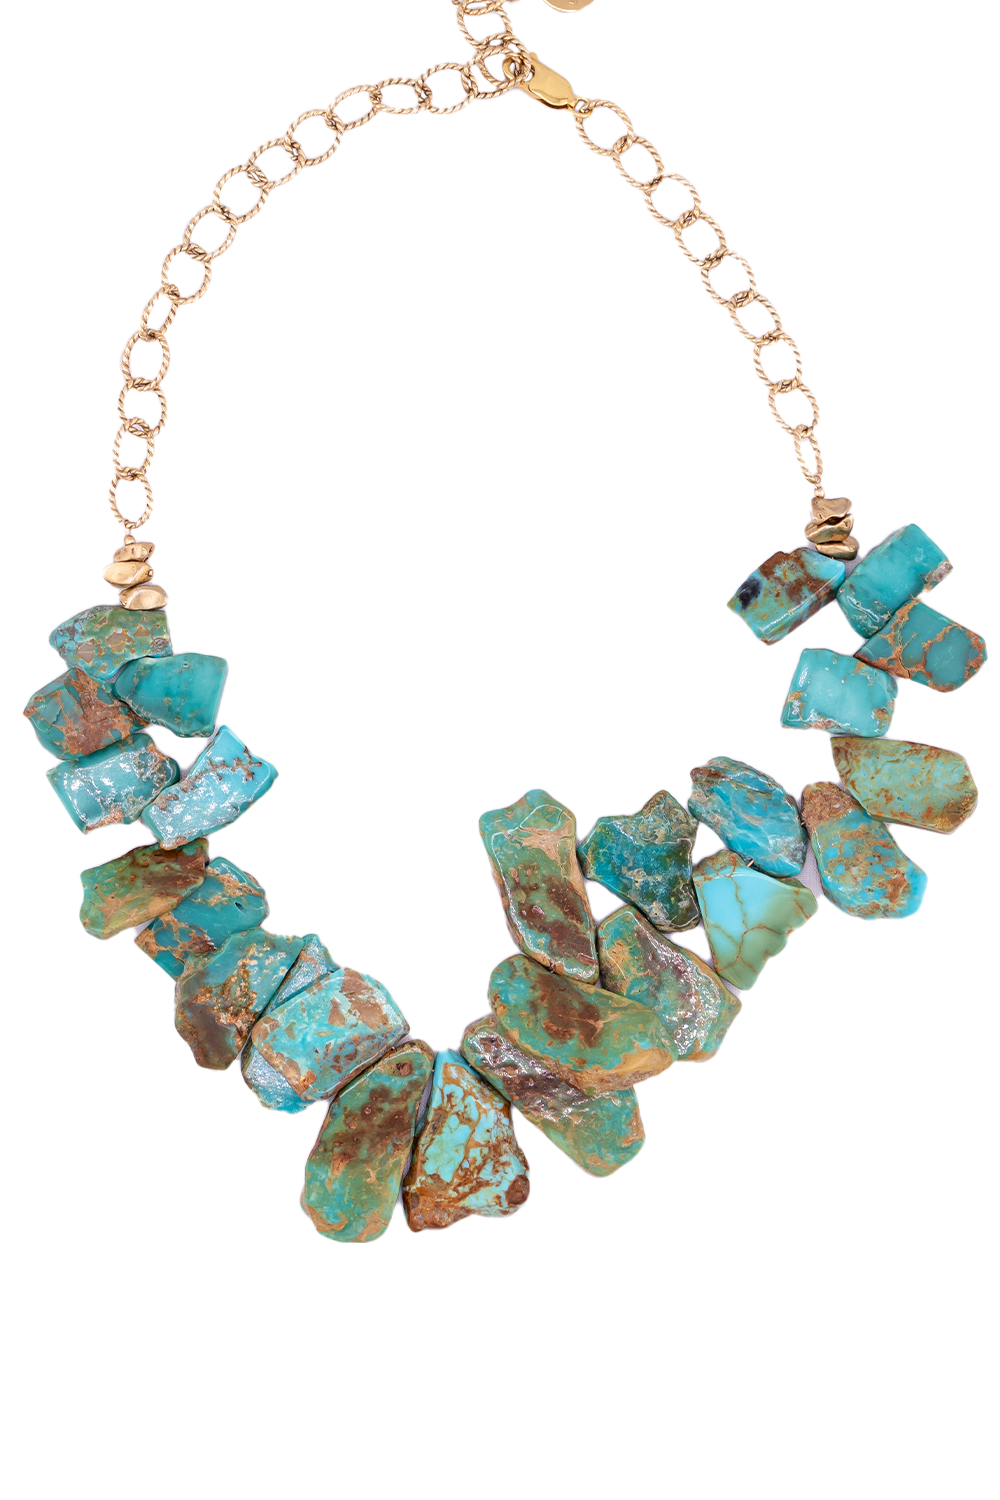 #8 Arizona Turquoise Slice Necklace